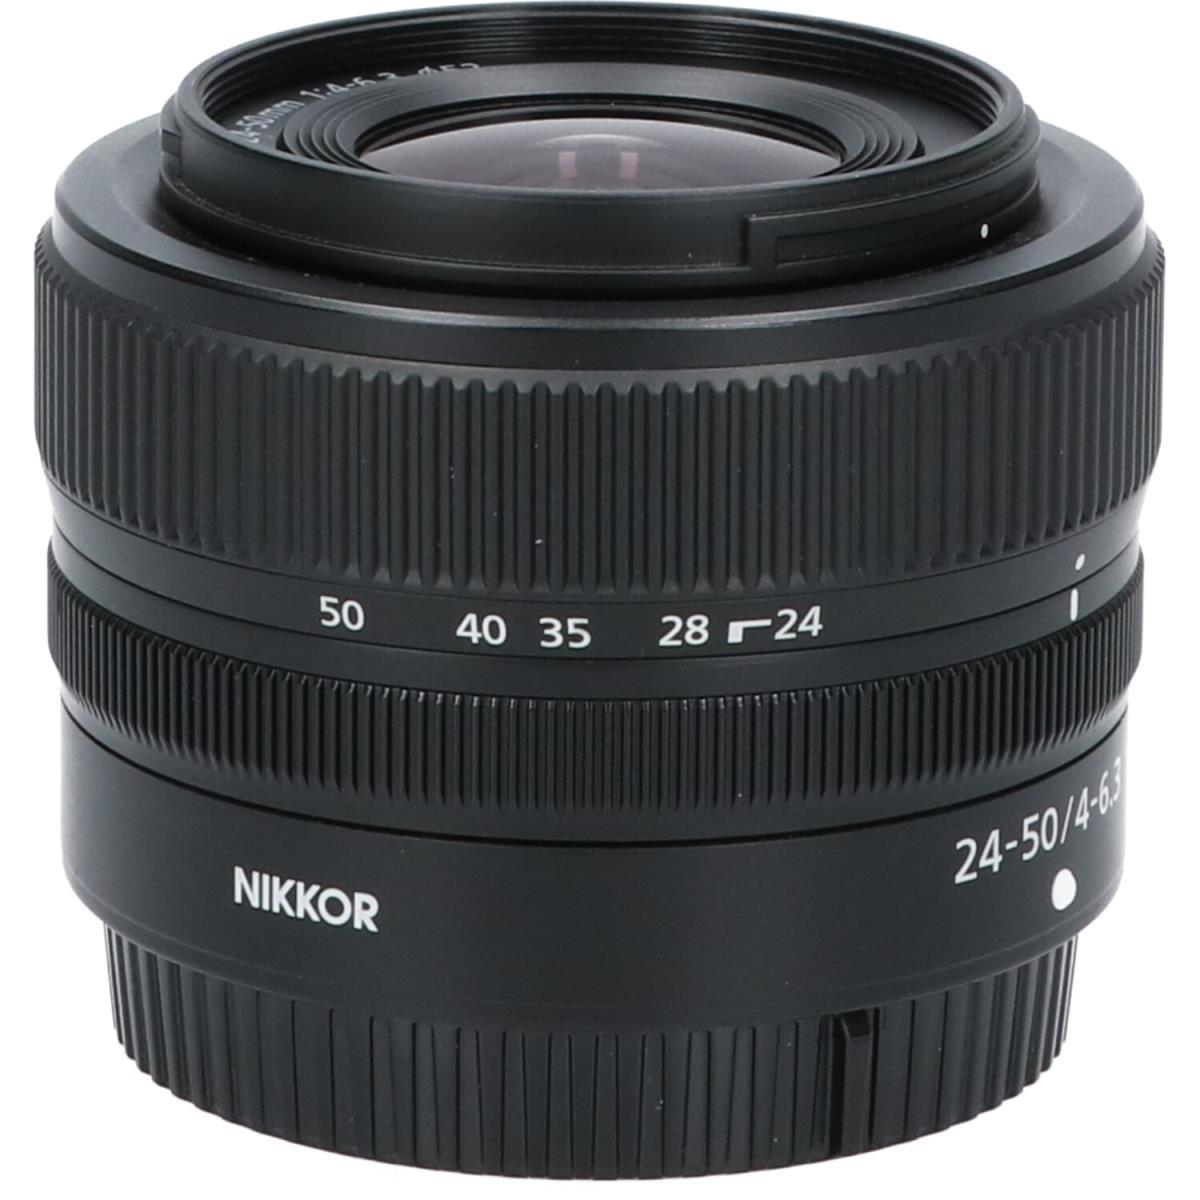 NIKKOニコン Nikon NIKKOR Z 24-50mm f/4-6.3